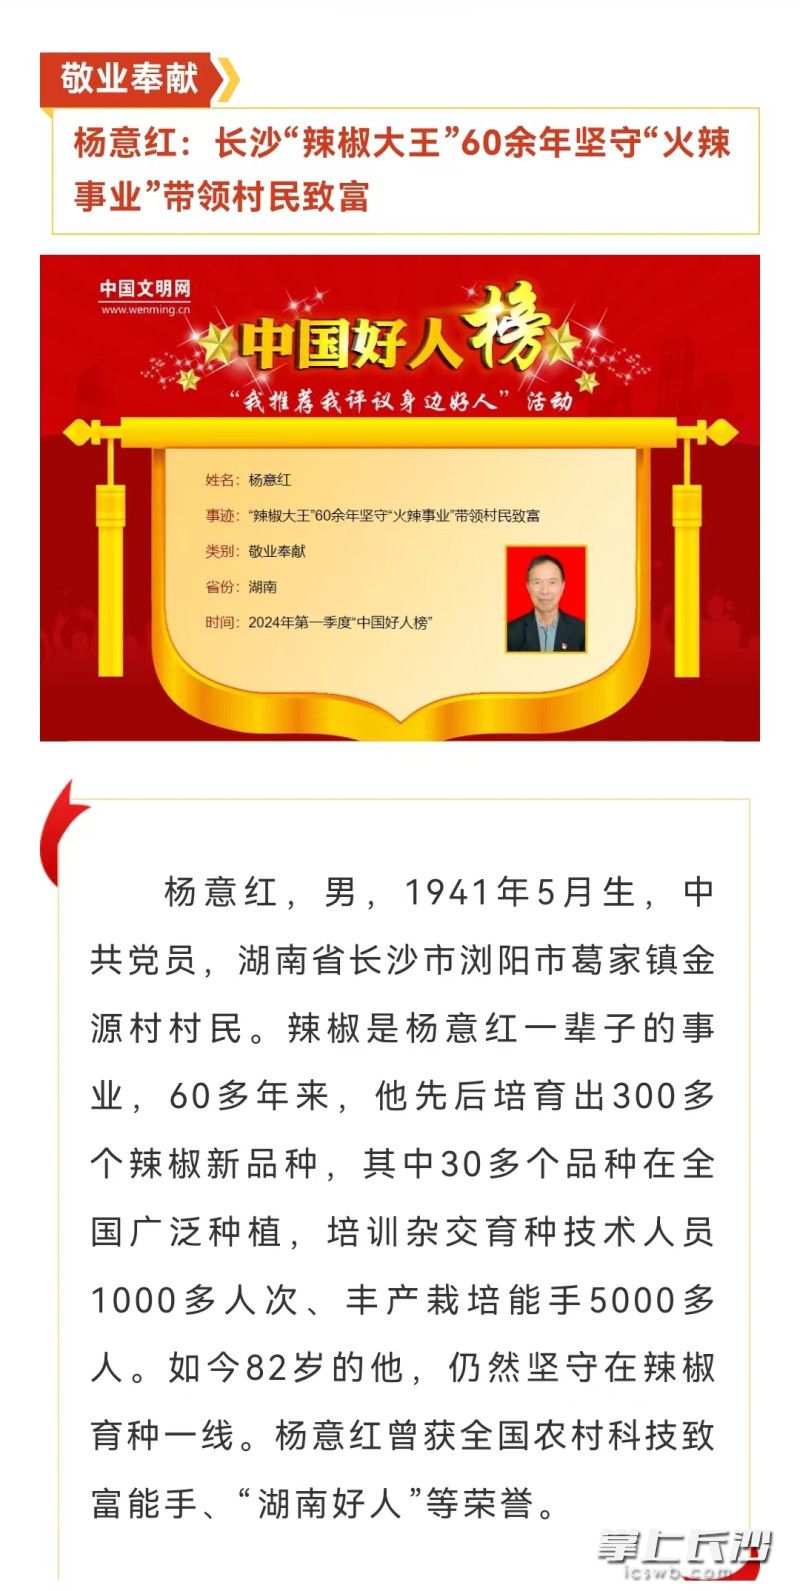 来自长沙的“辣椒大王”杨意红获评敬业奉献类“中国好人”。均为市文明办供图